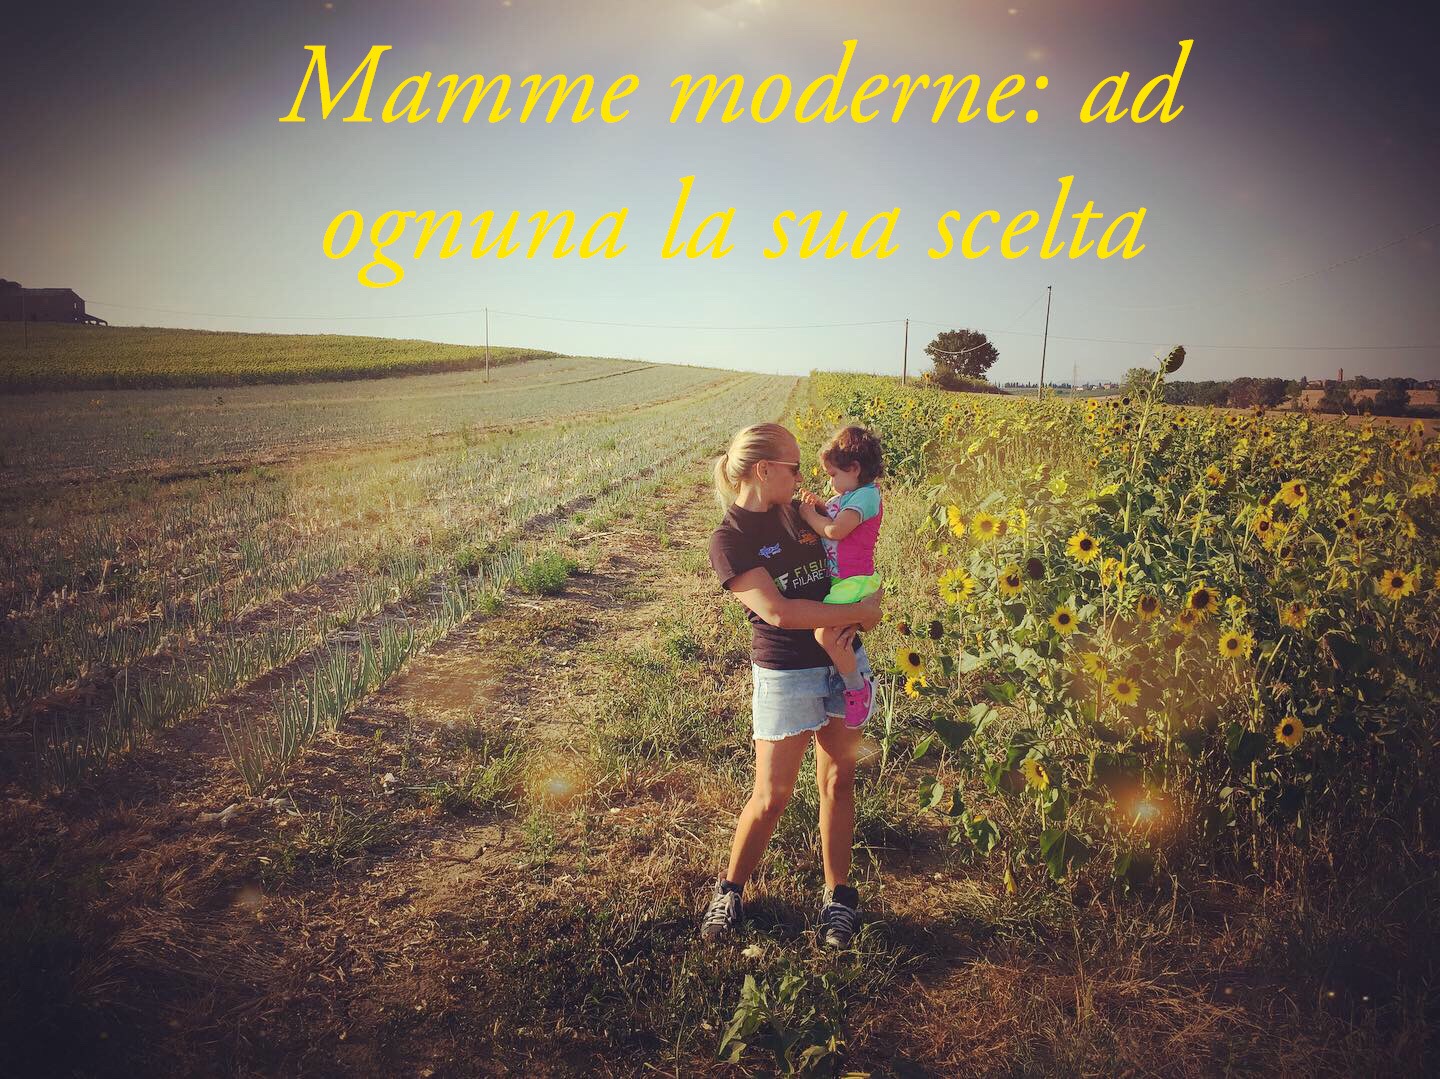 Mamme moderne: ad ognuna la sua scelta